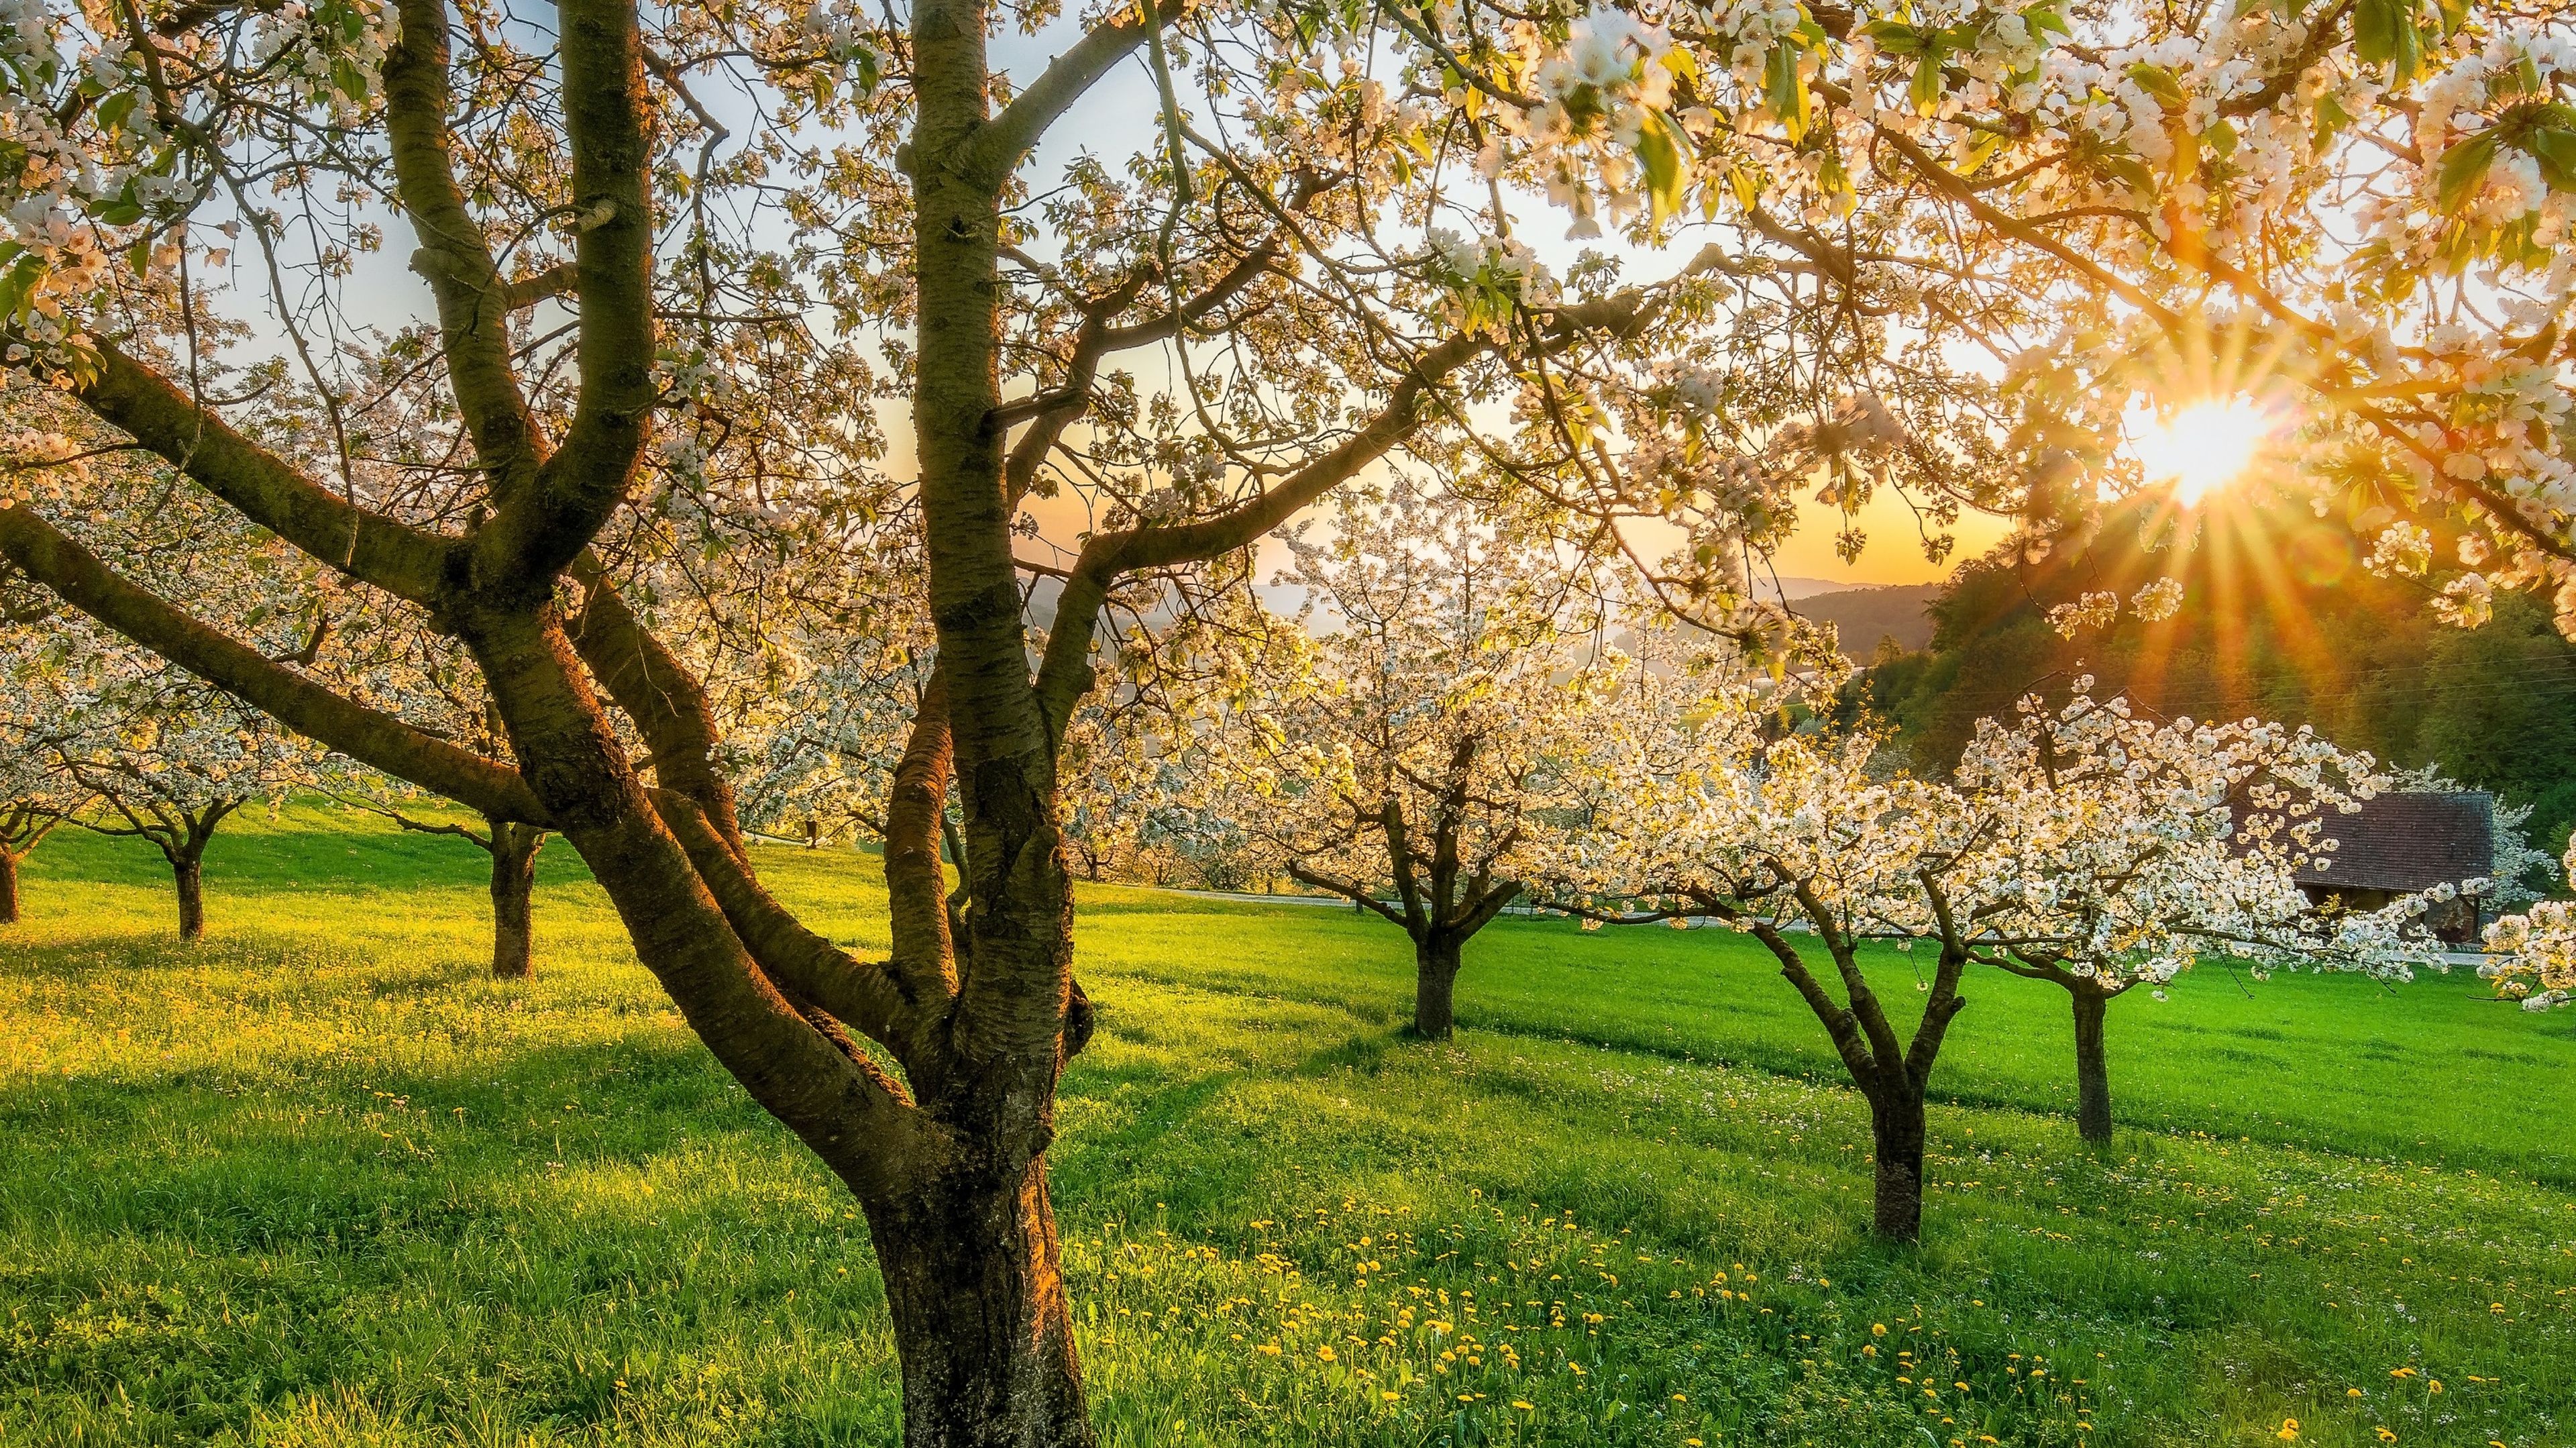 Paisaje con cerezos en flor en un campo de hierba en plena primavera